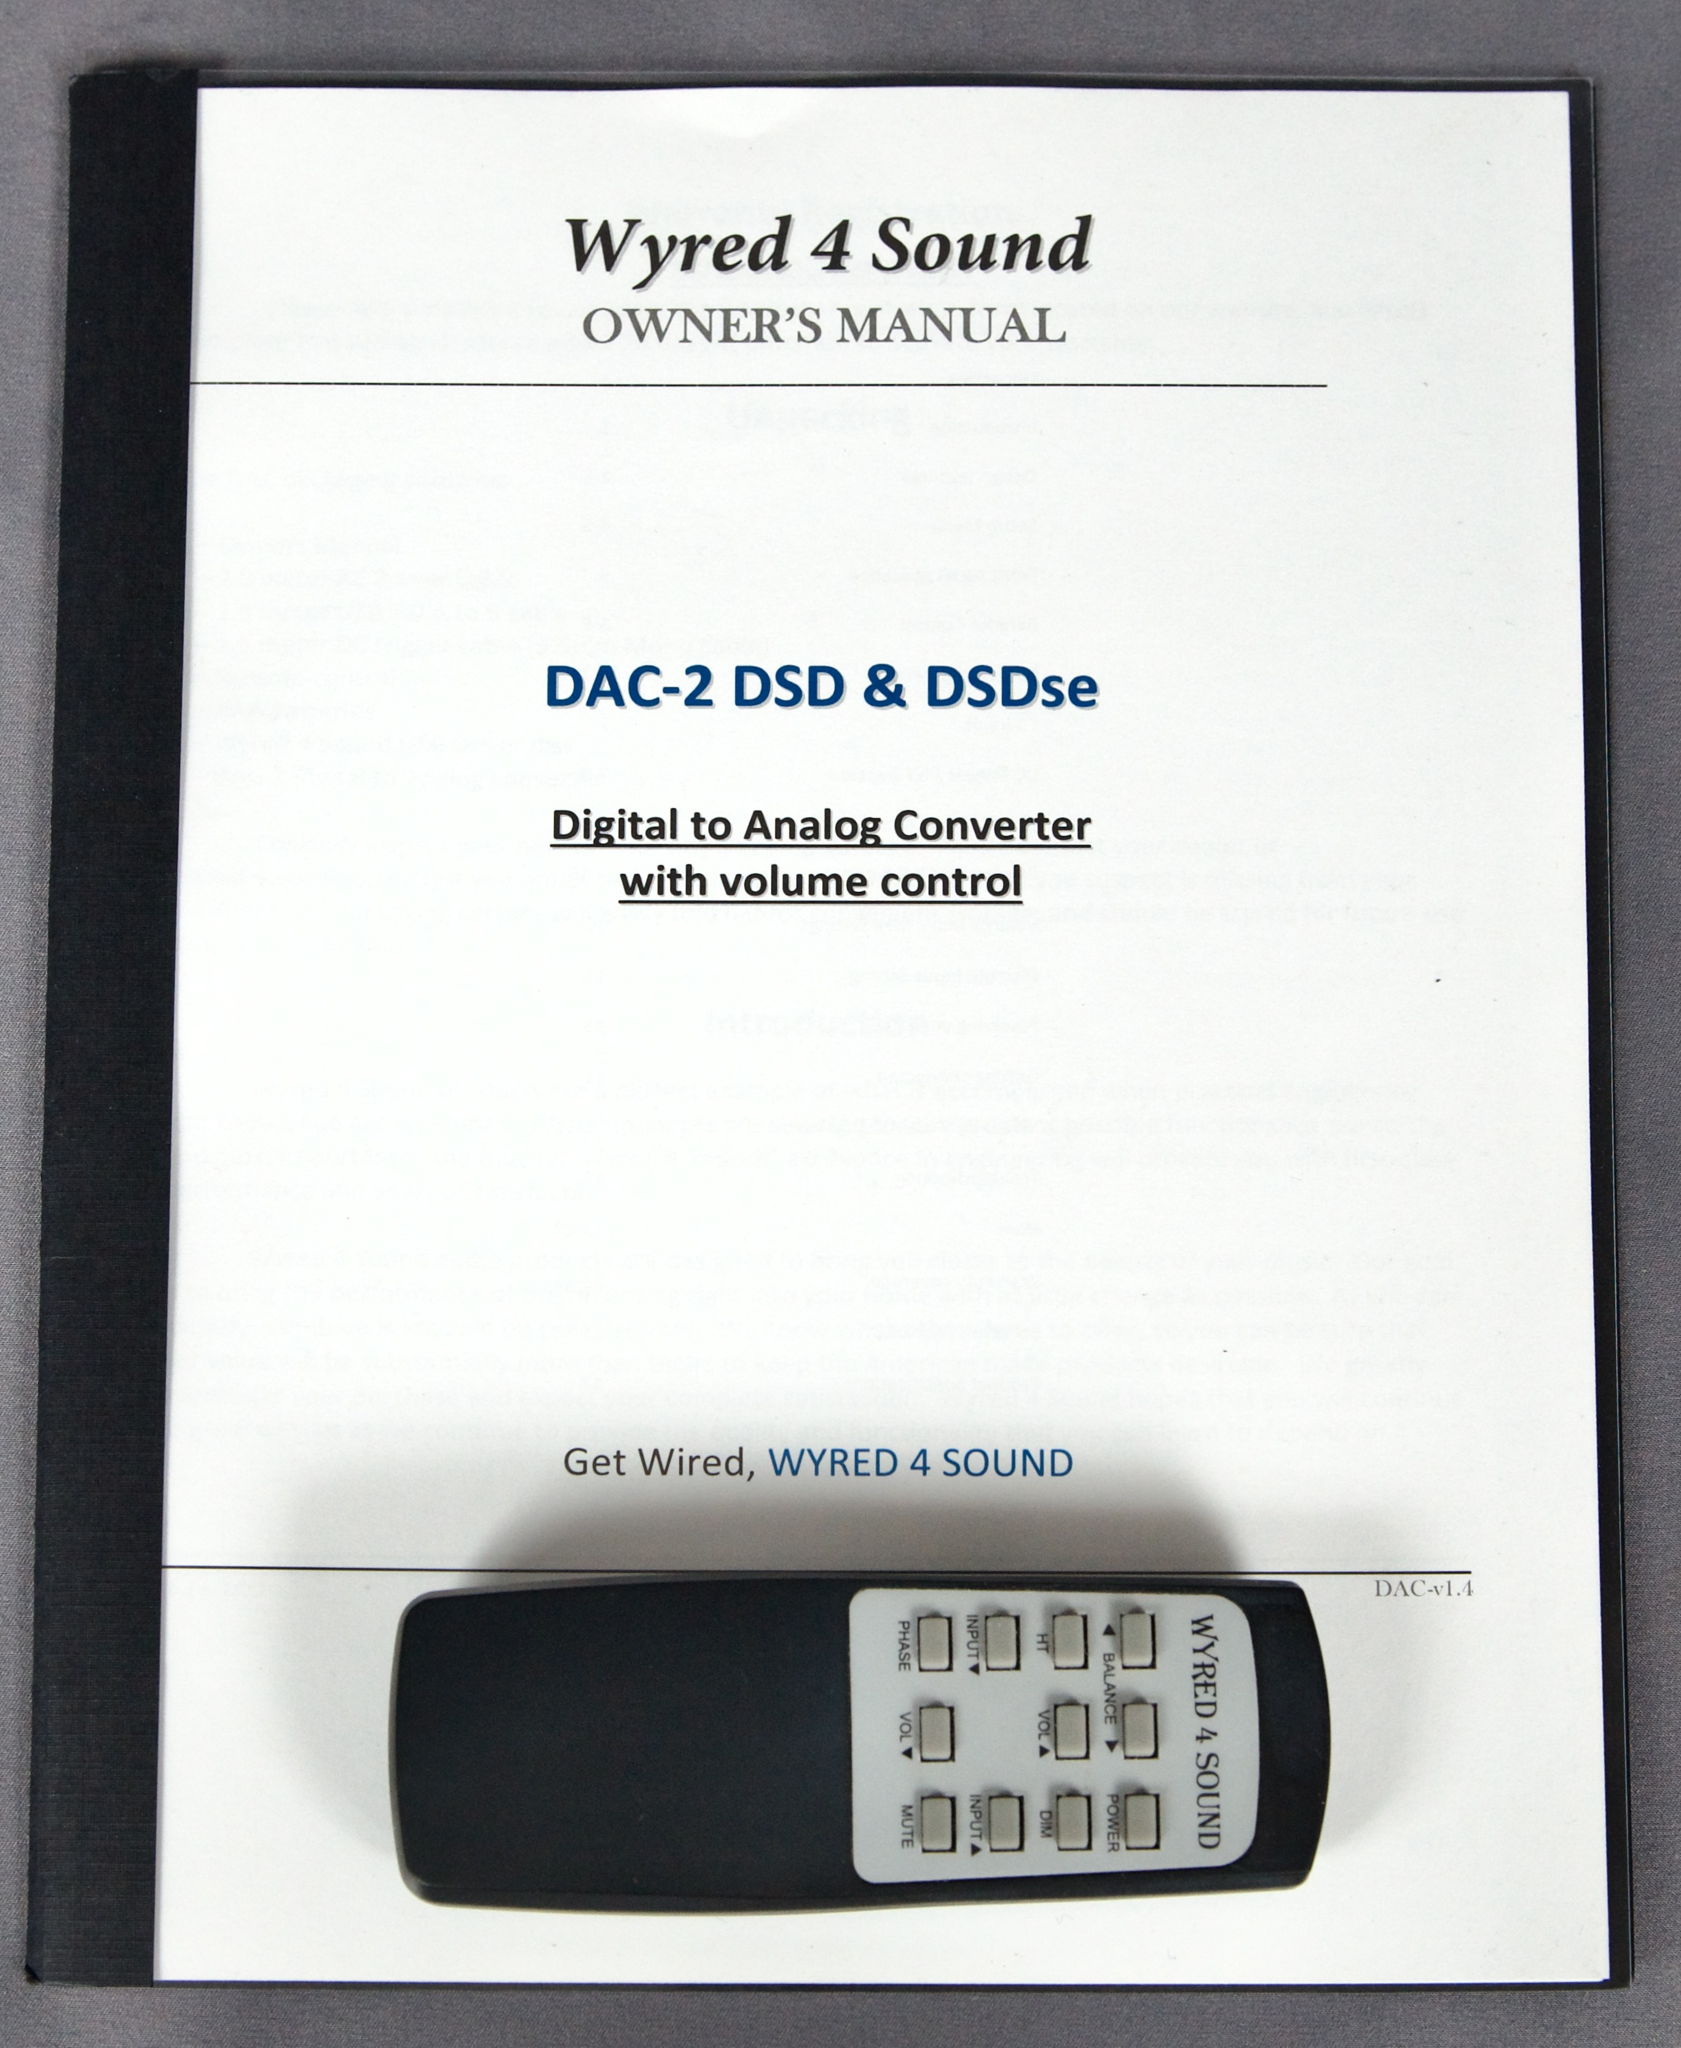 Wyred 4 Sound DAC-2 DSD 6